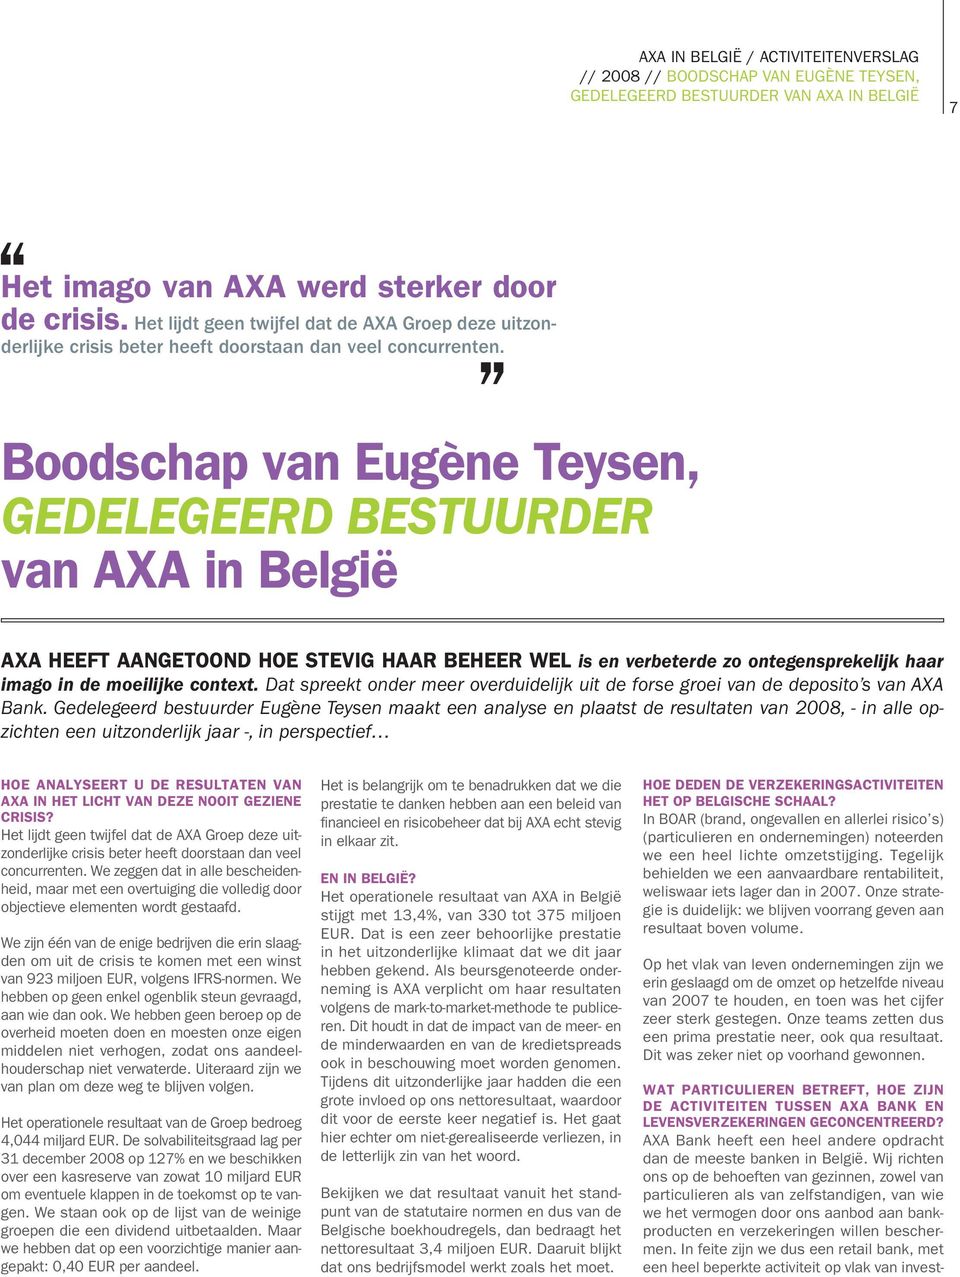 Boodschap van Eugène Teysen, GEDELEGEERD BESTUURDER van AXA in België AXA heeft aangetoond hoe stevig haar beheer wel is en verbeterde zo ontegensprekelijk haar imago in de moeilijke context.